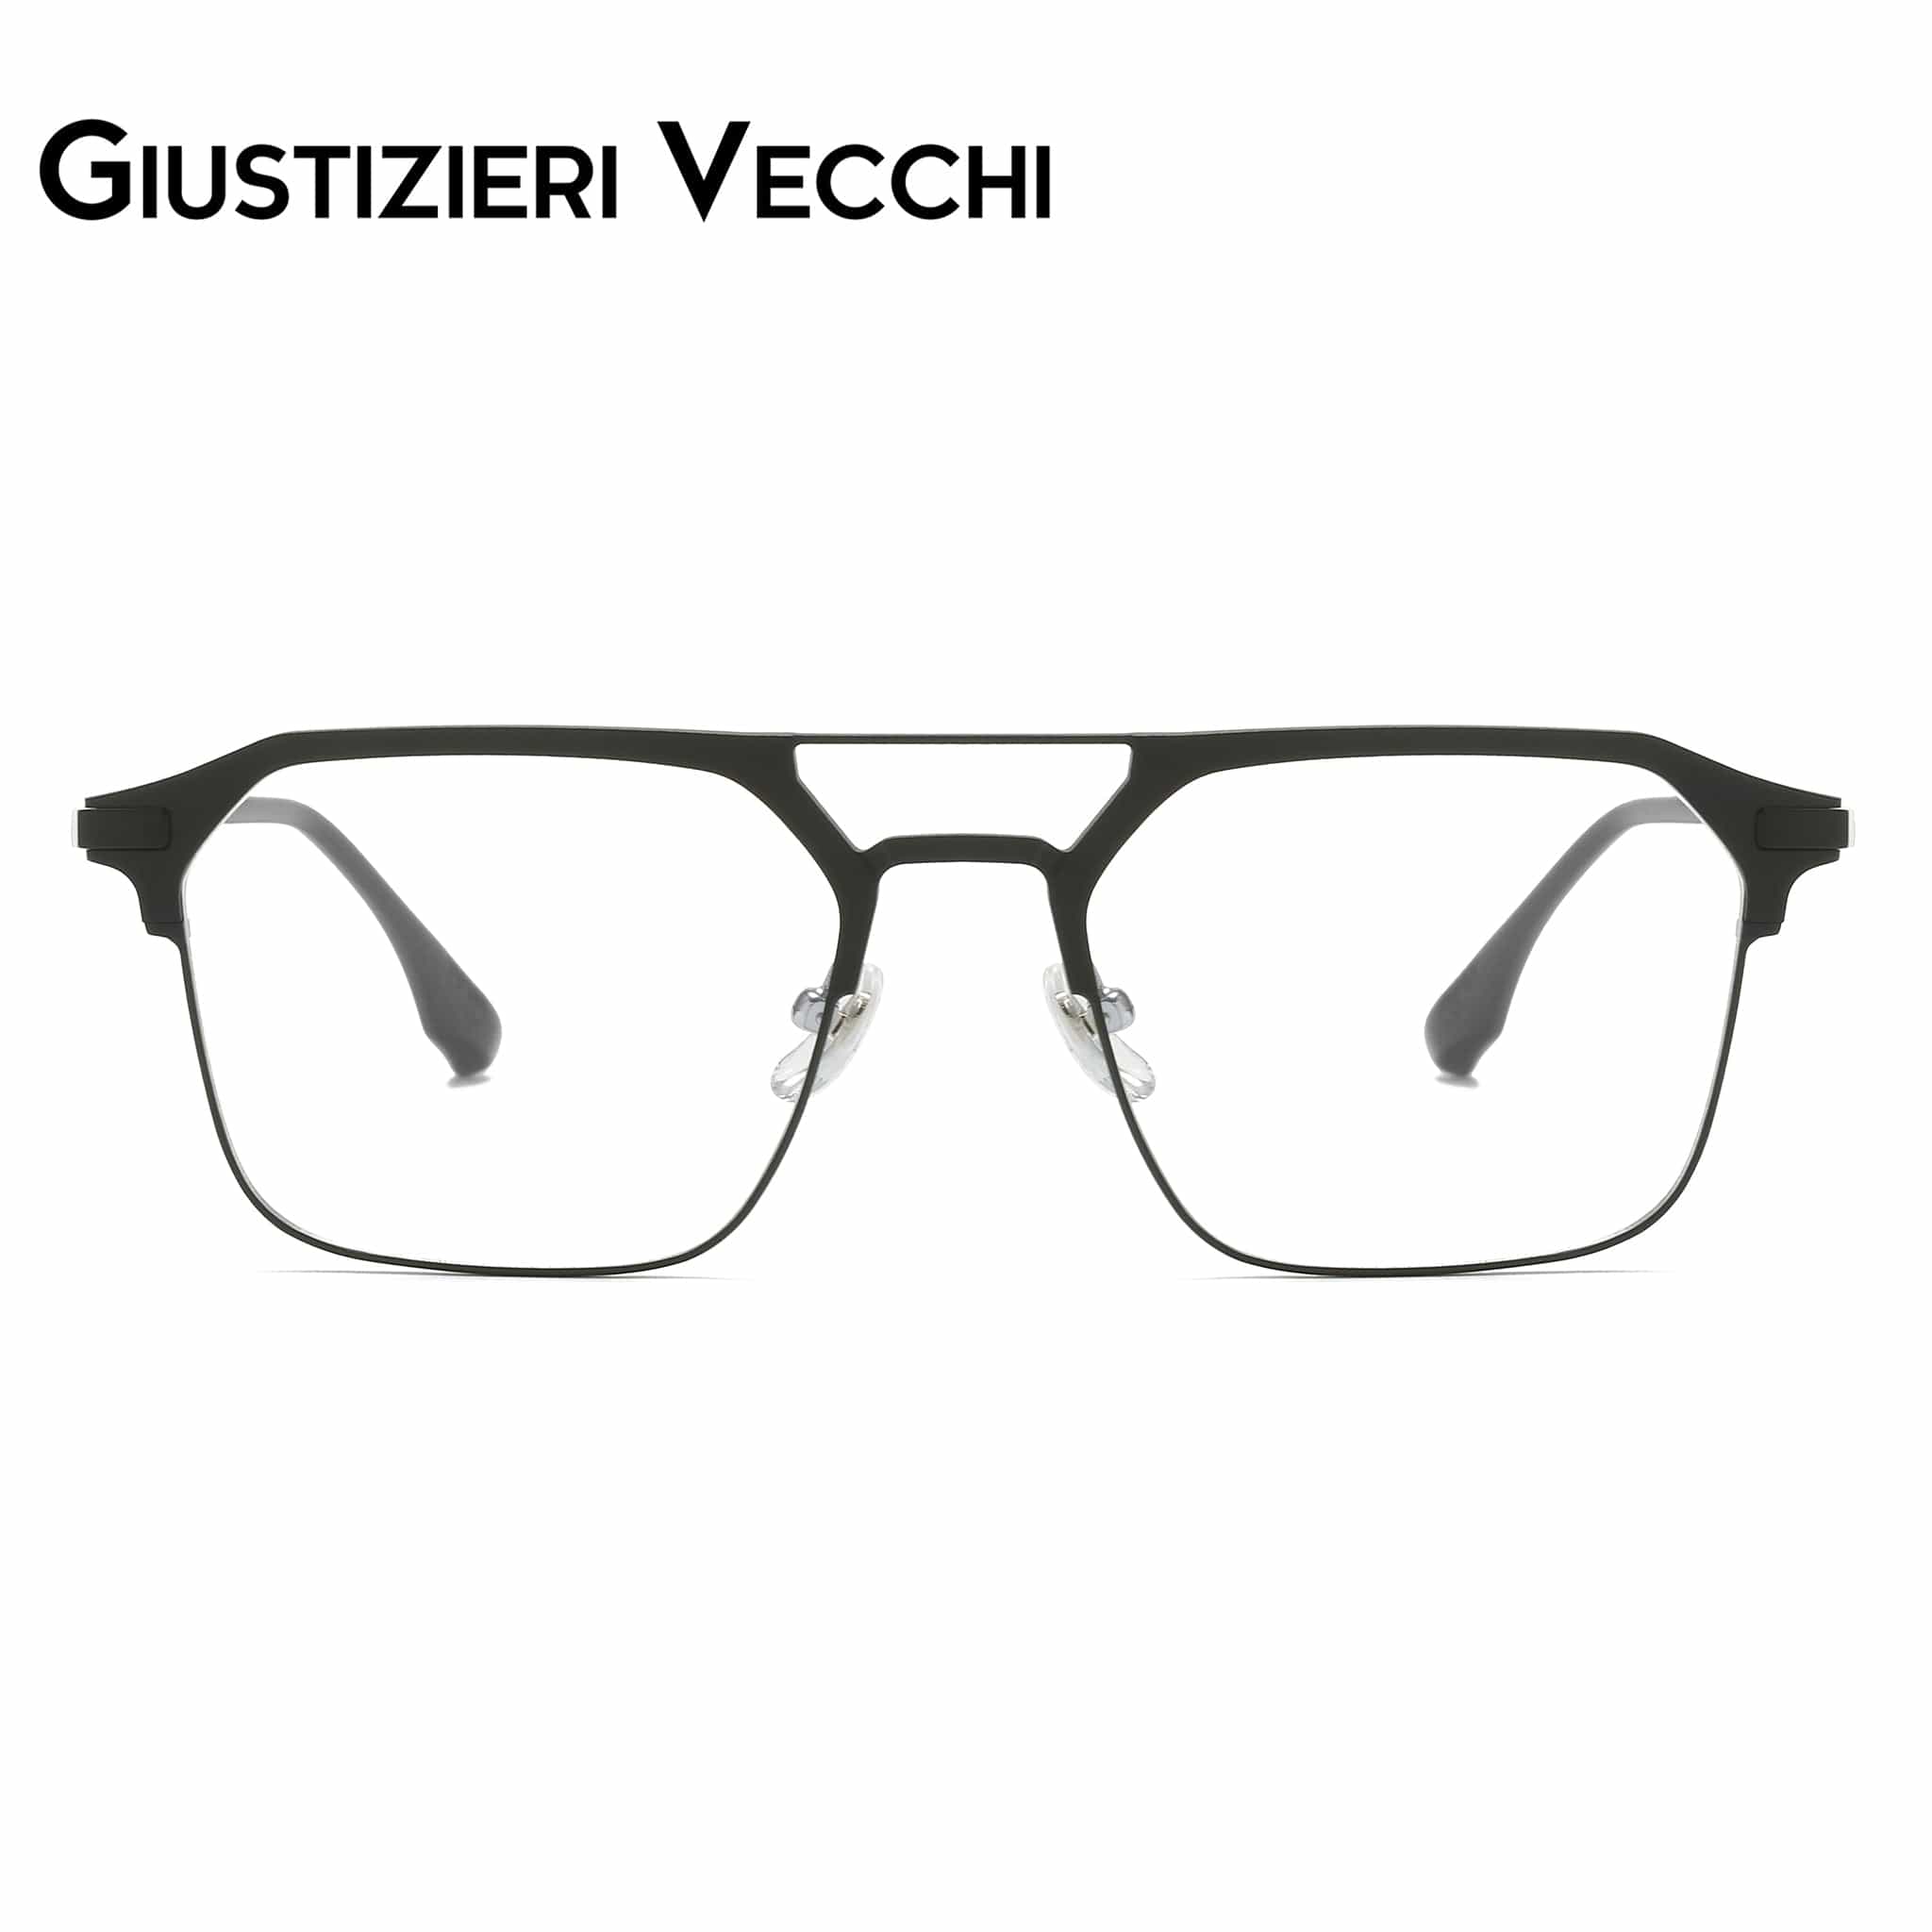 GIUSTIZIERI VECCHI Eyeglasses Medium / Black IceBlast Duo